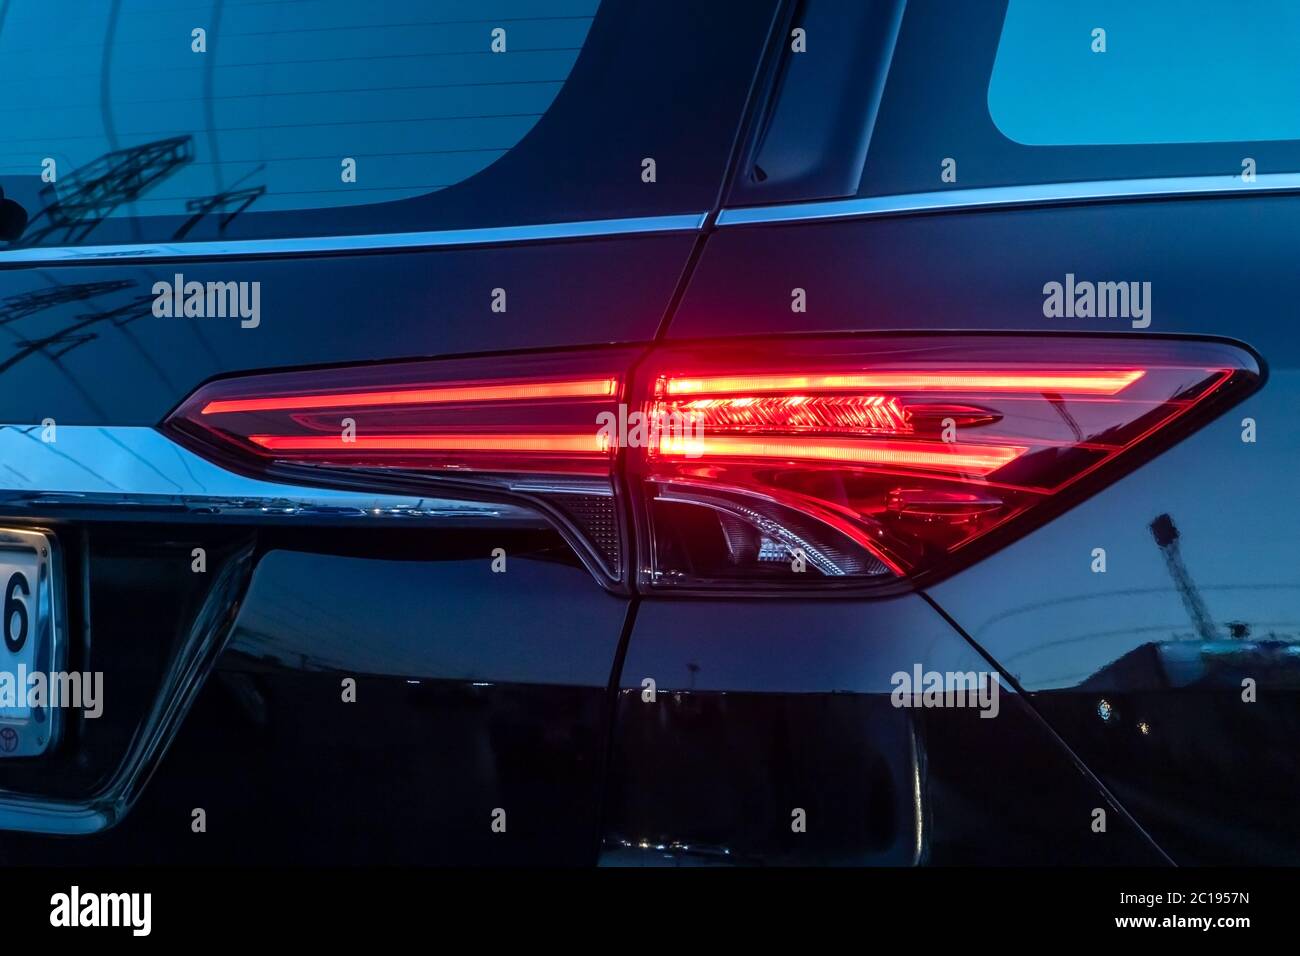 Auto rücklicht reflexion -Fotos und -Bildmaterial in hoher Auflösung – Alamy